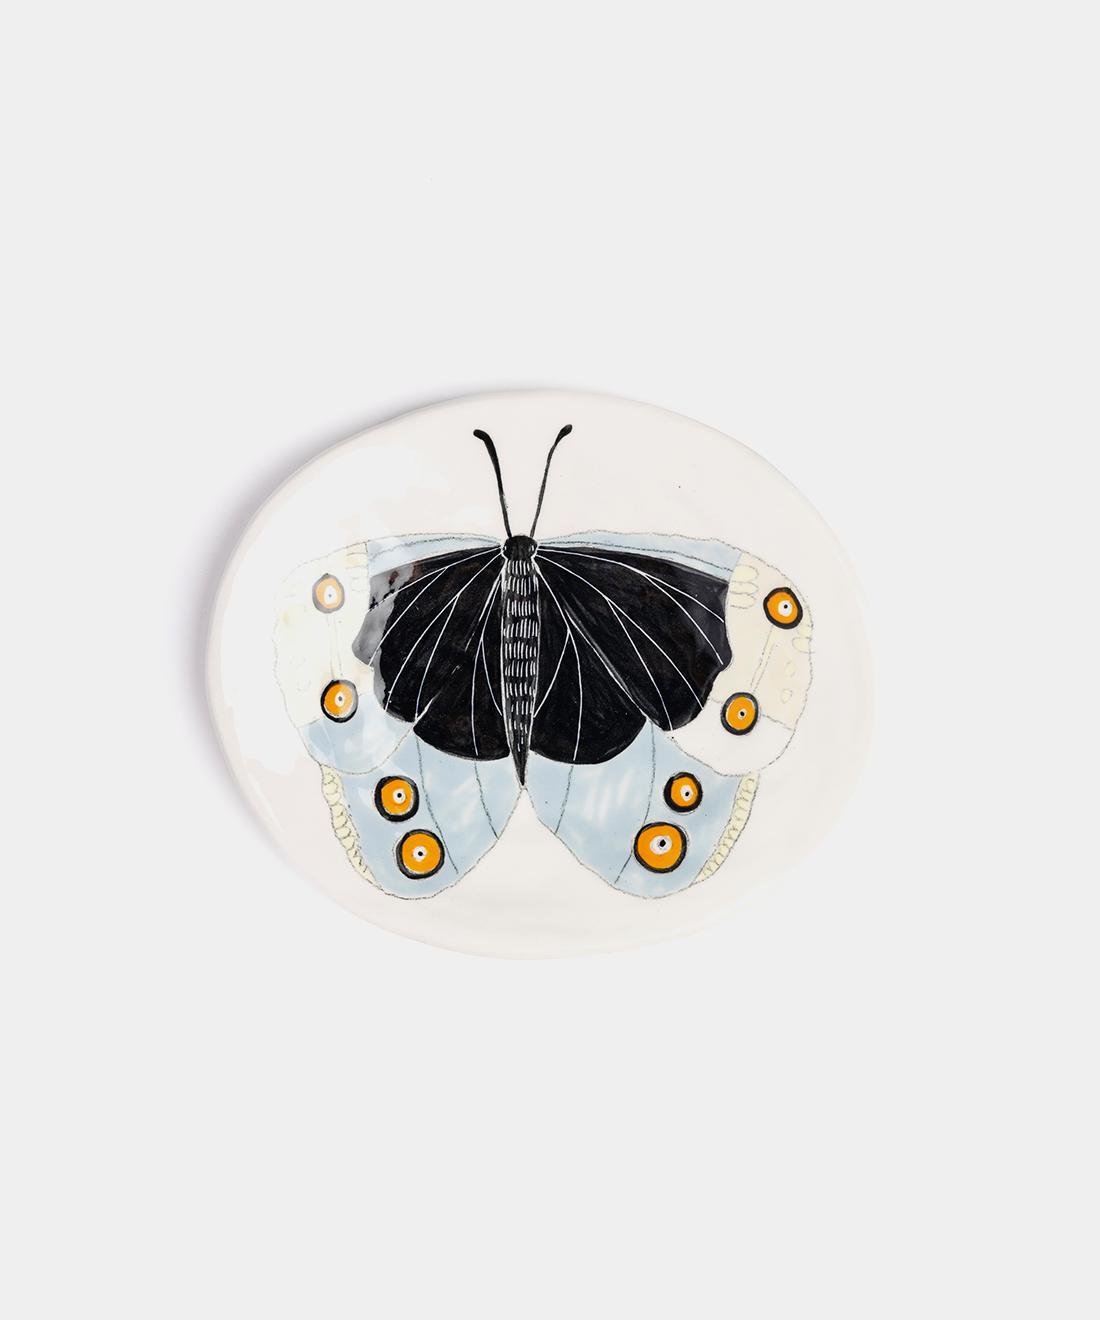 Medium Butterfly Ceramic Plates, 7